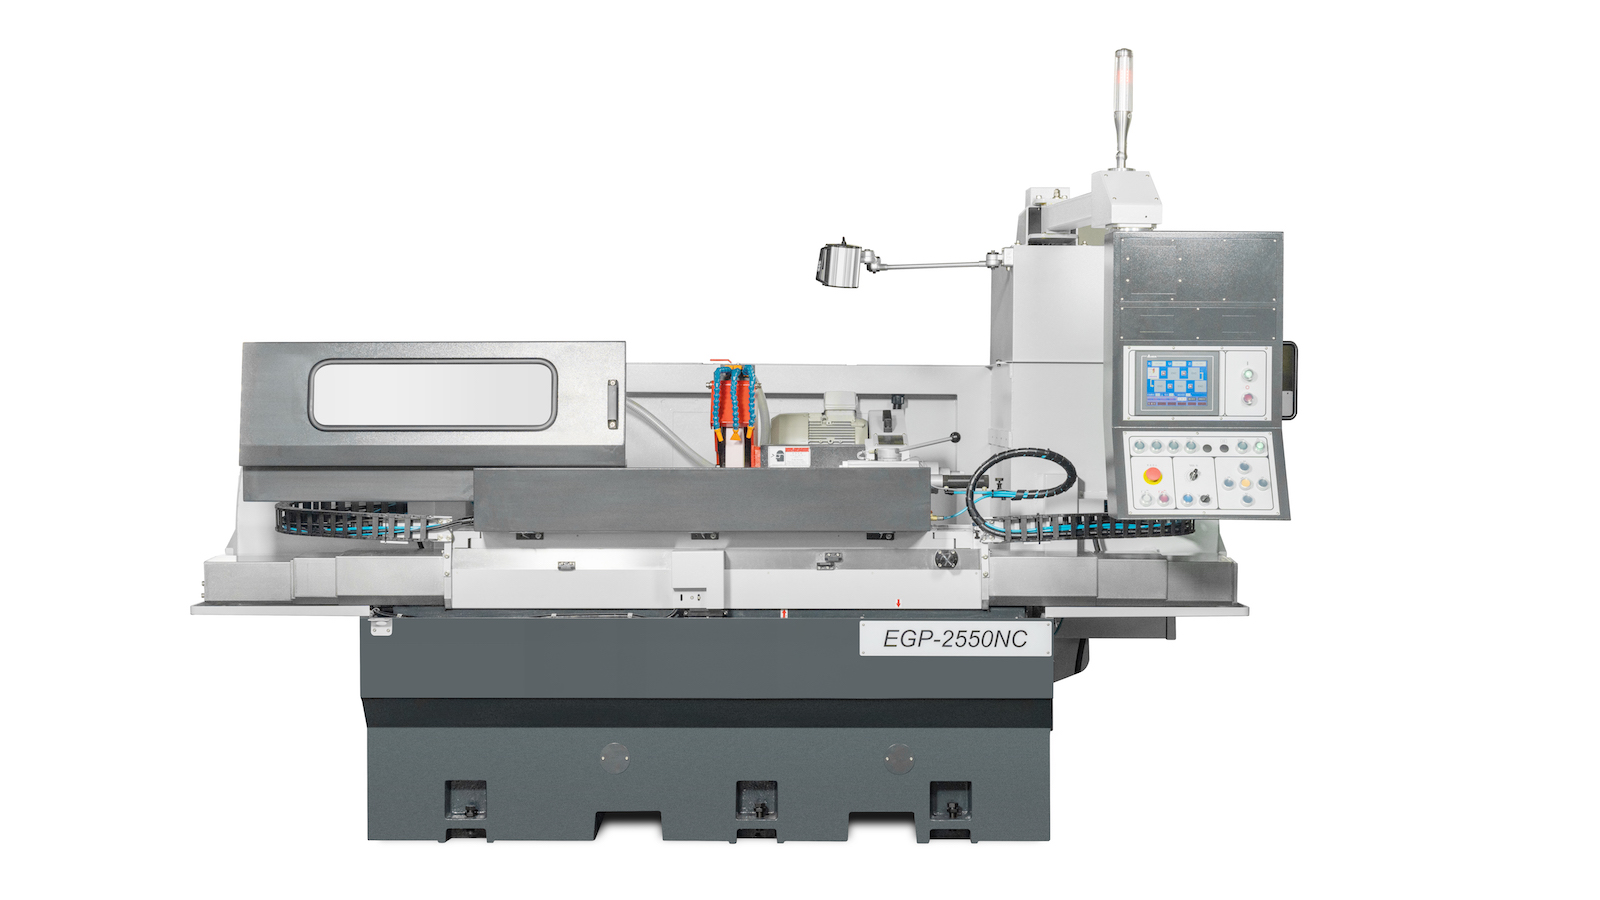 Suppliers of EGP 2550 N/C Grinding Machine